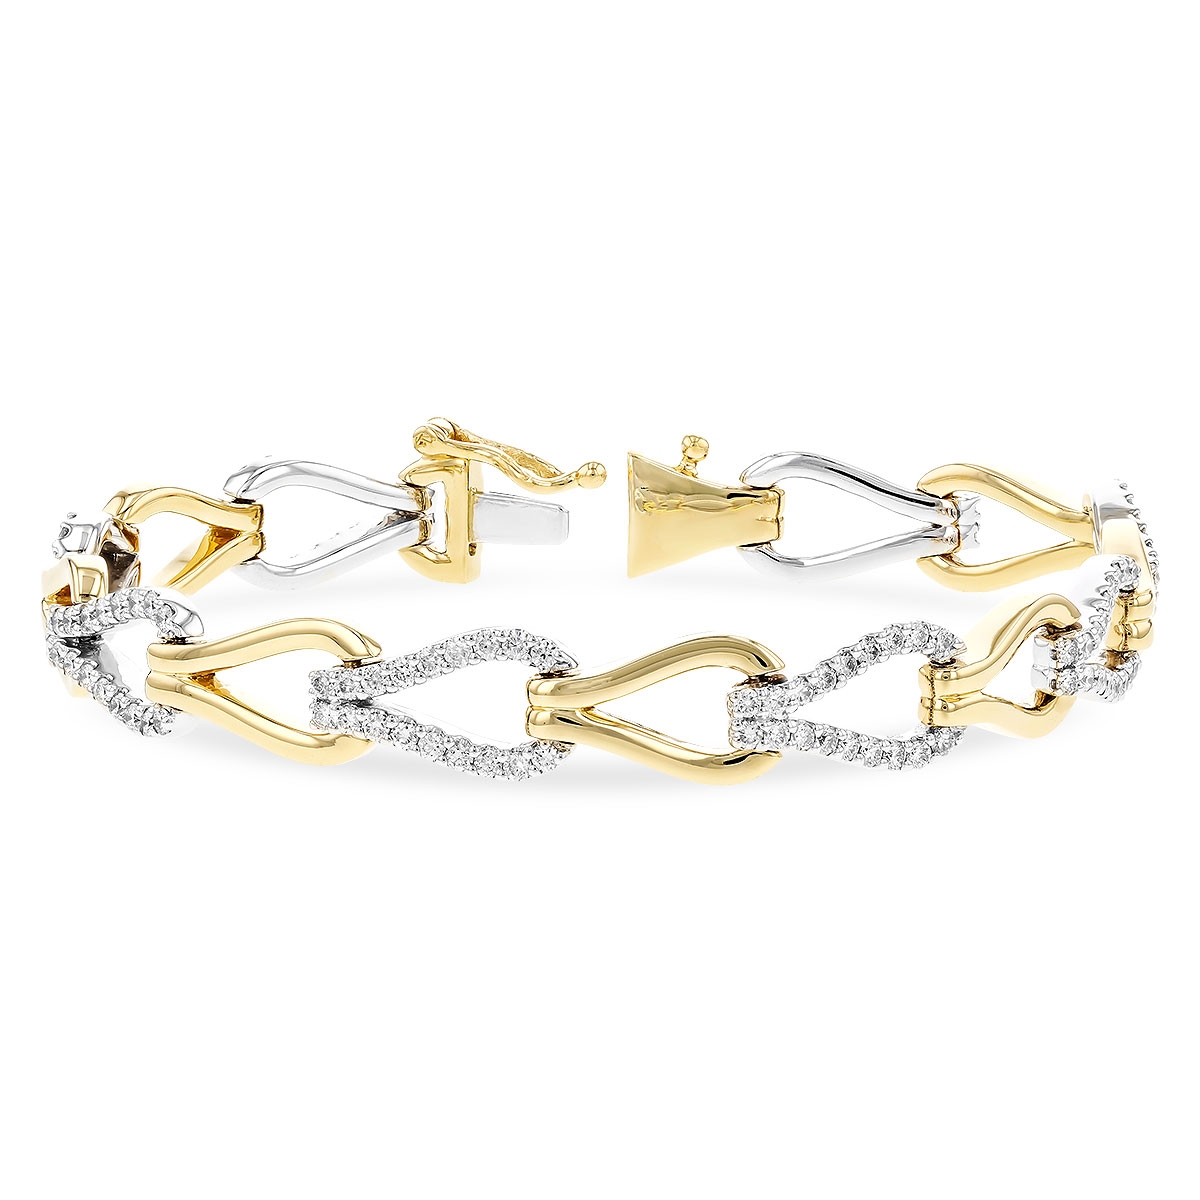 Allison Kaufman 14K Yellow and White Gold Diamond Bracelet